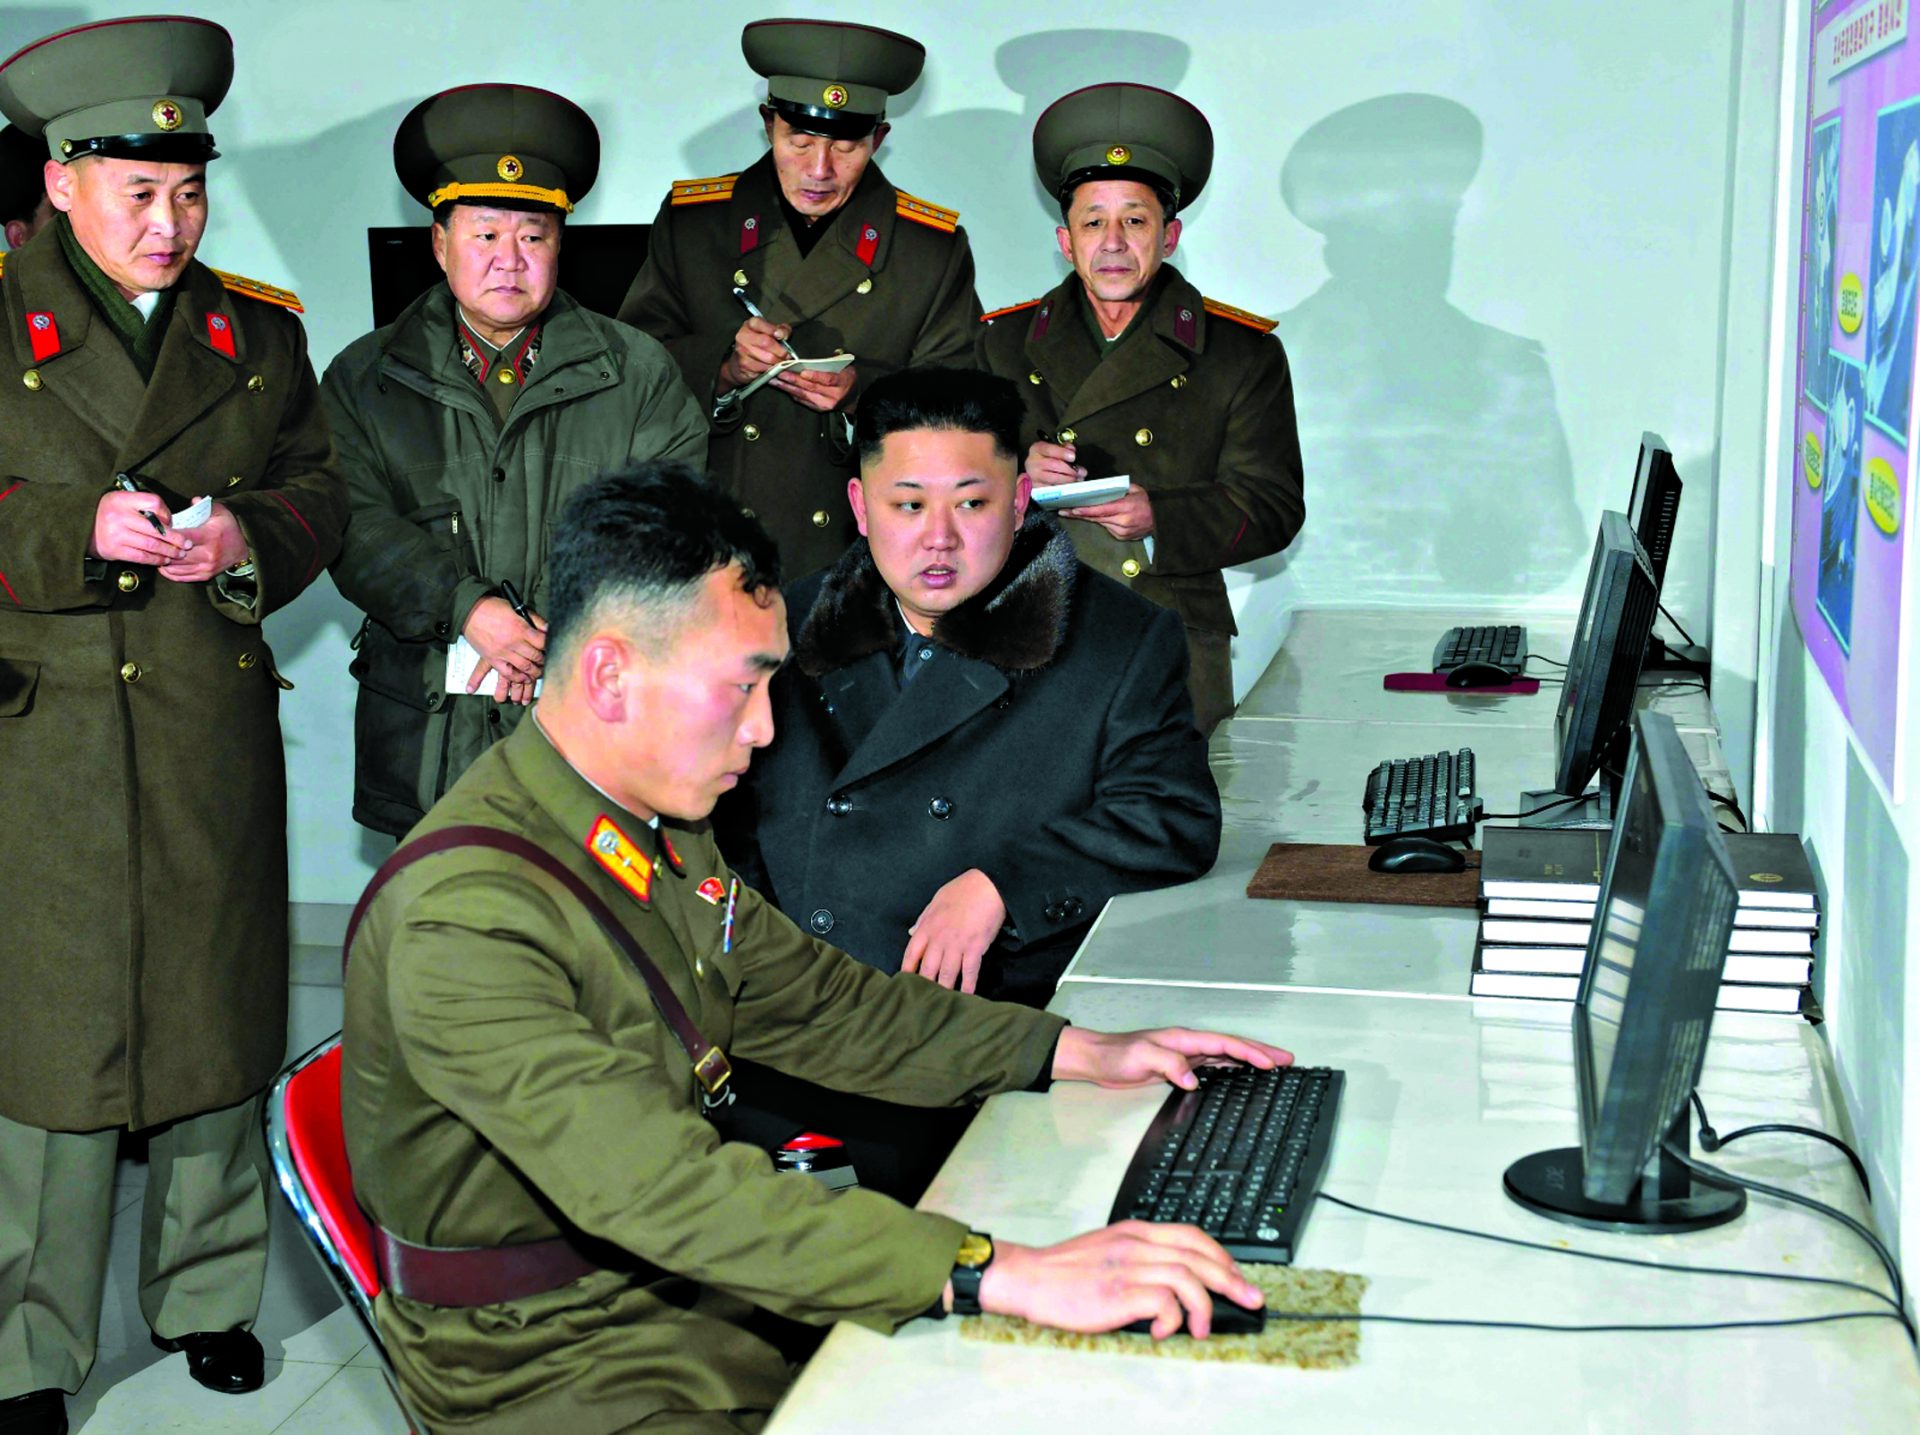 Coreia do Norte. Seis mil hackers prontos para o que der e vier